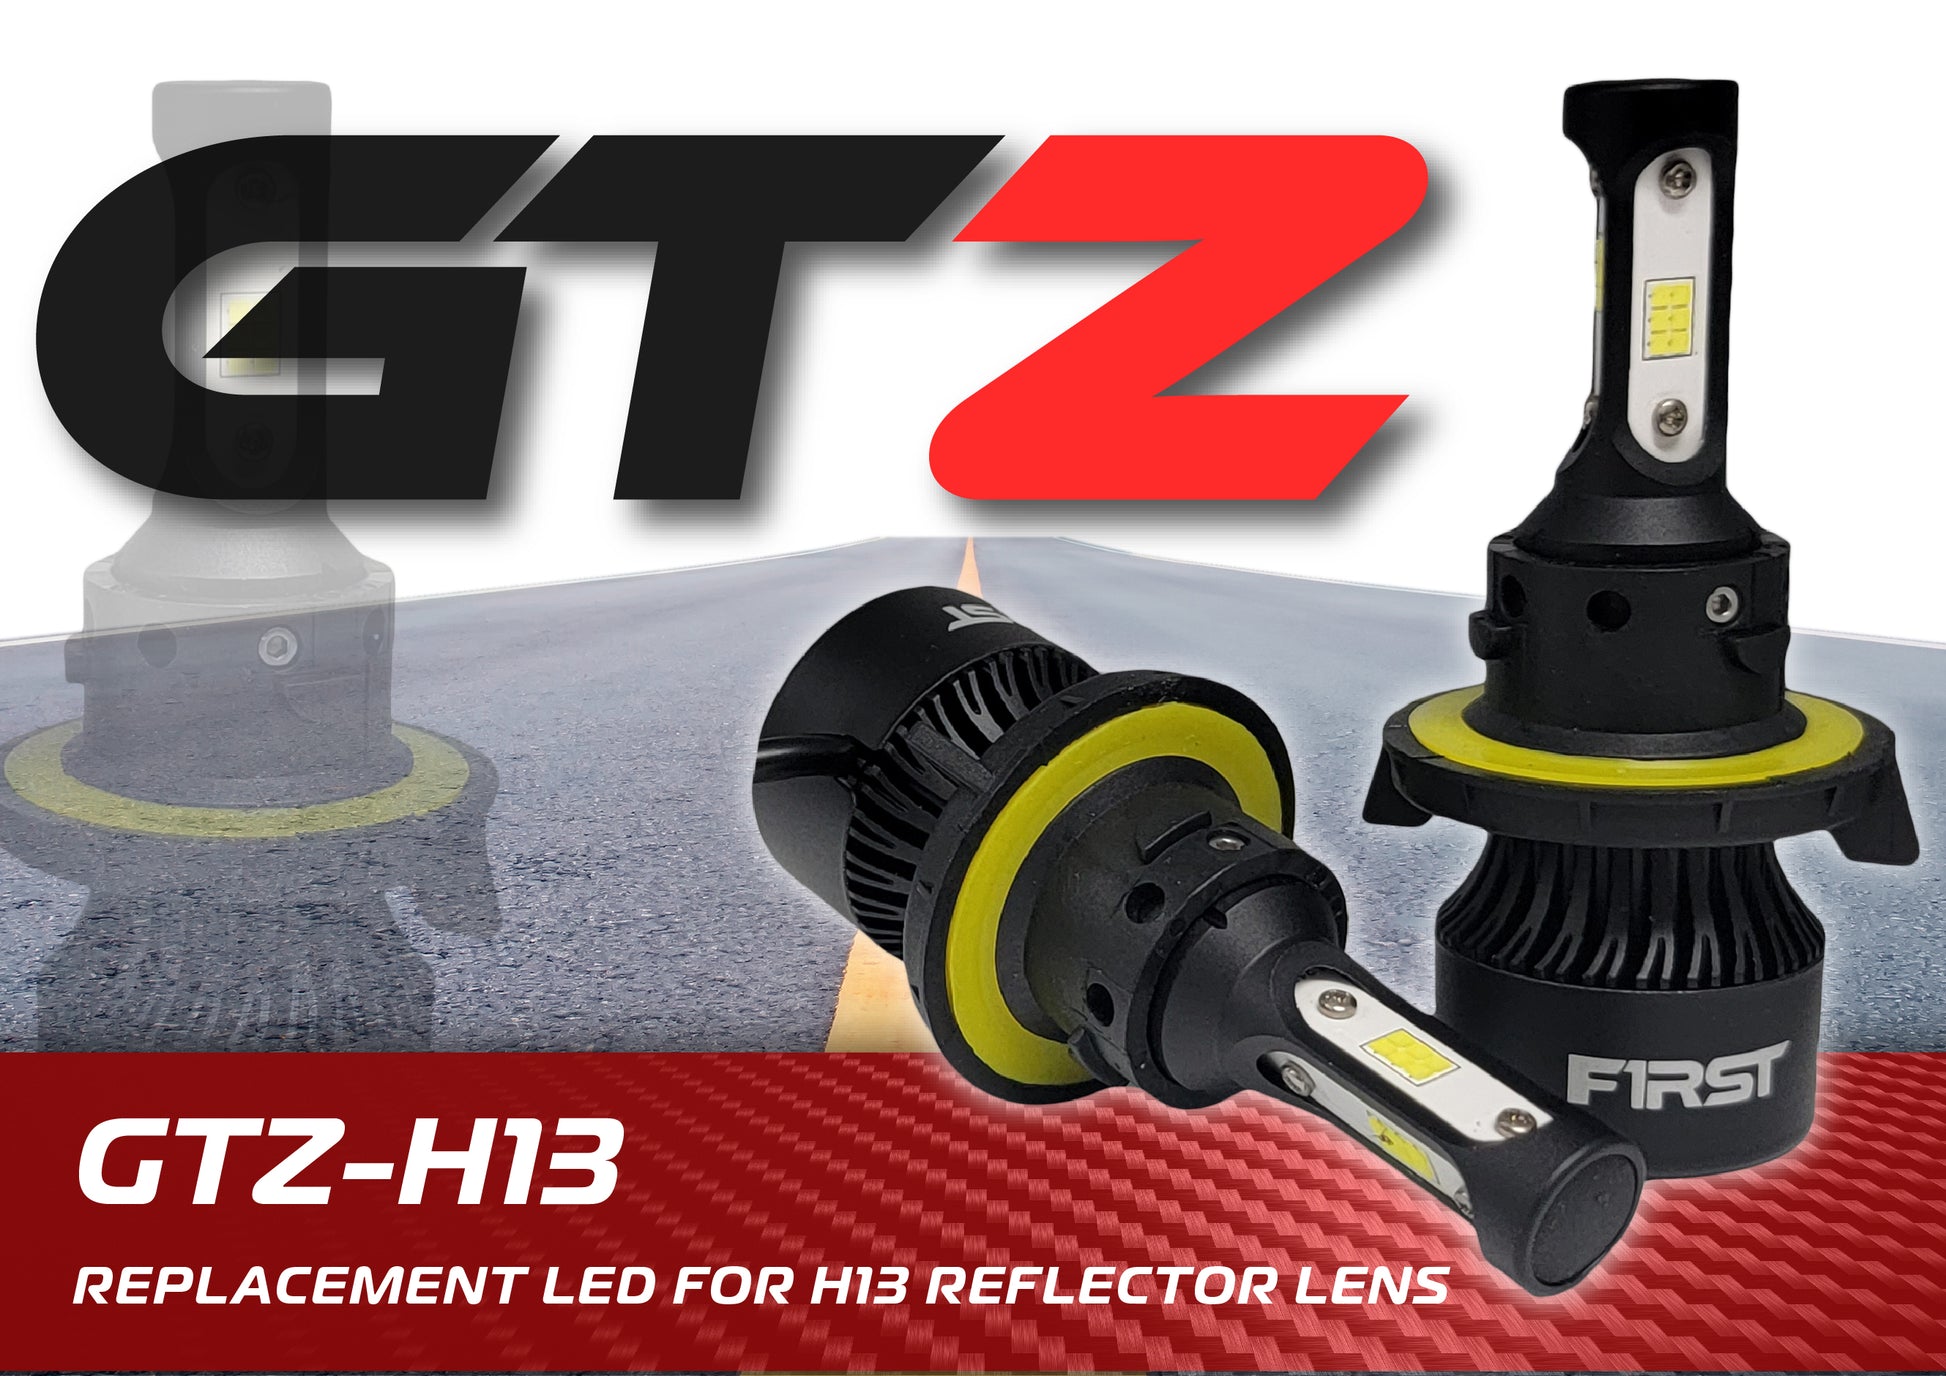 GTZ-H13